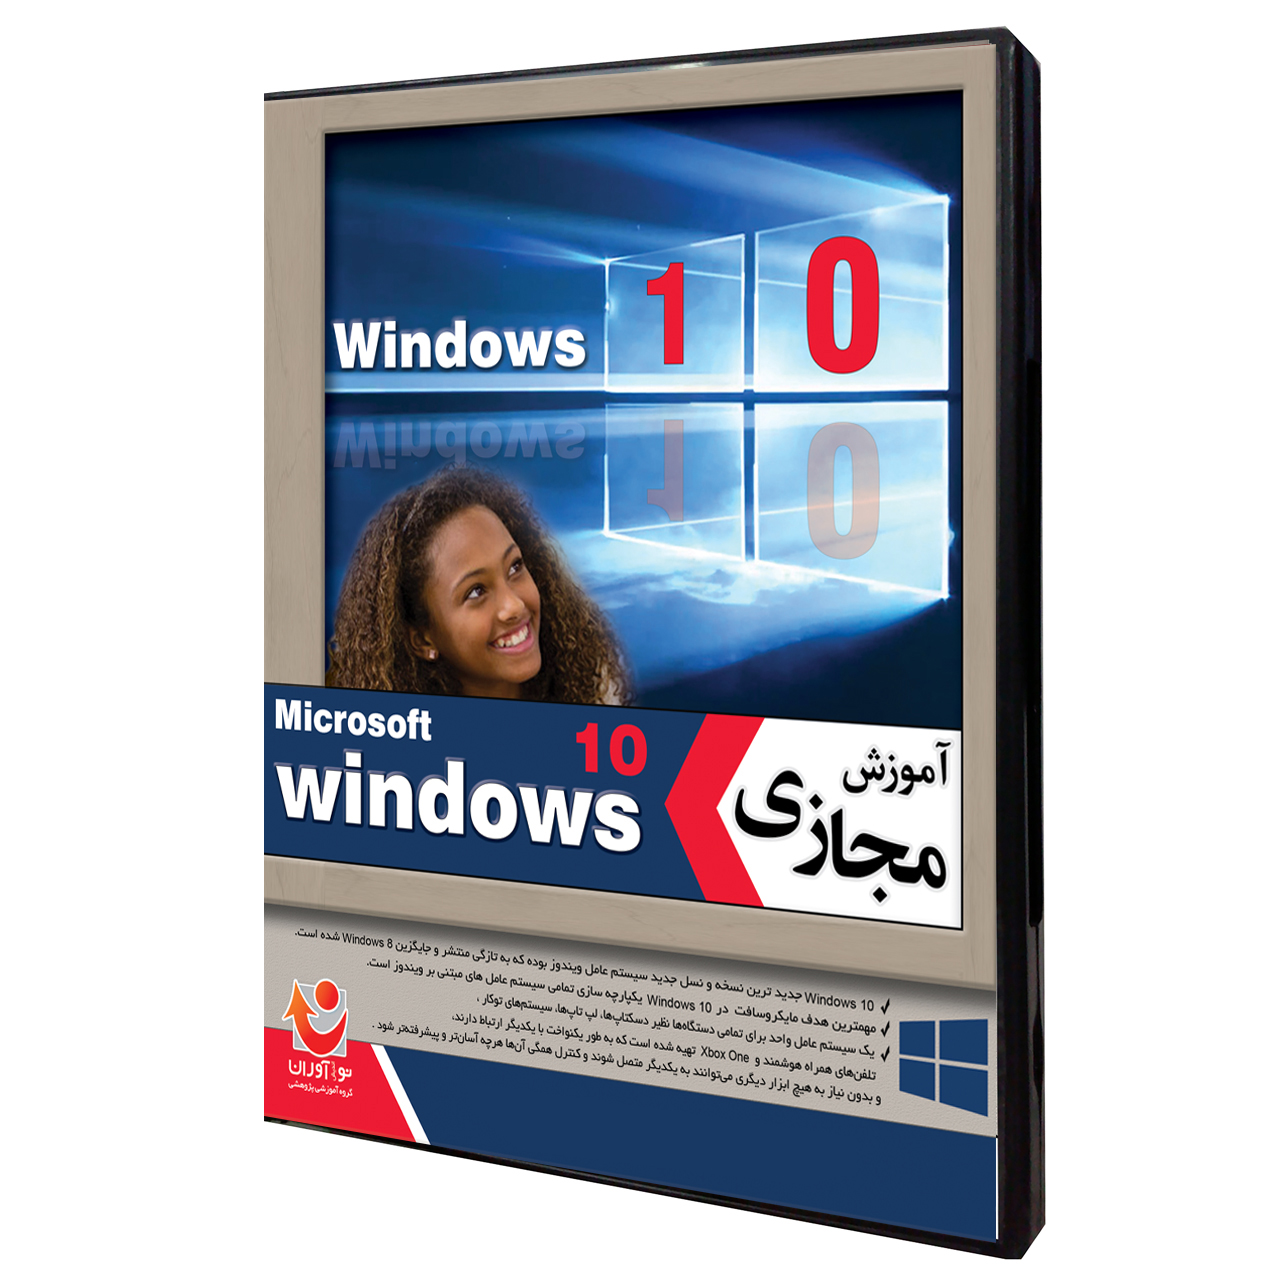 نرم افزار آموزش جامع Windows 10 نشر نوآوران